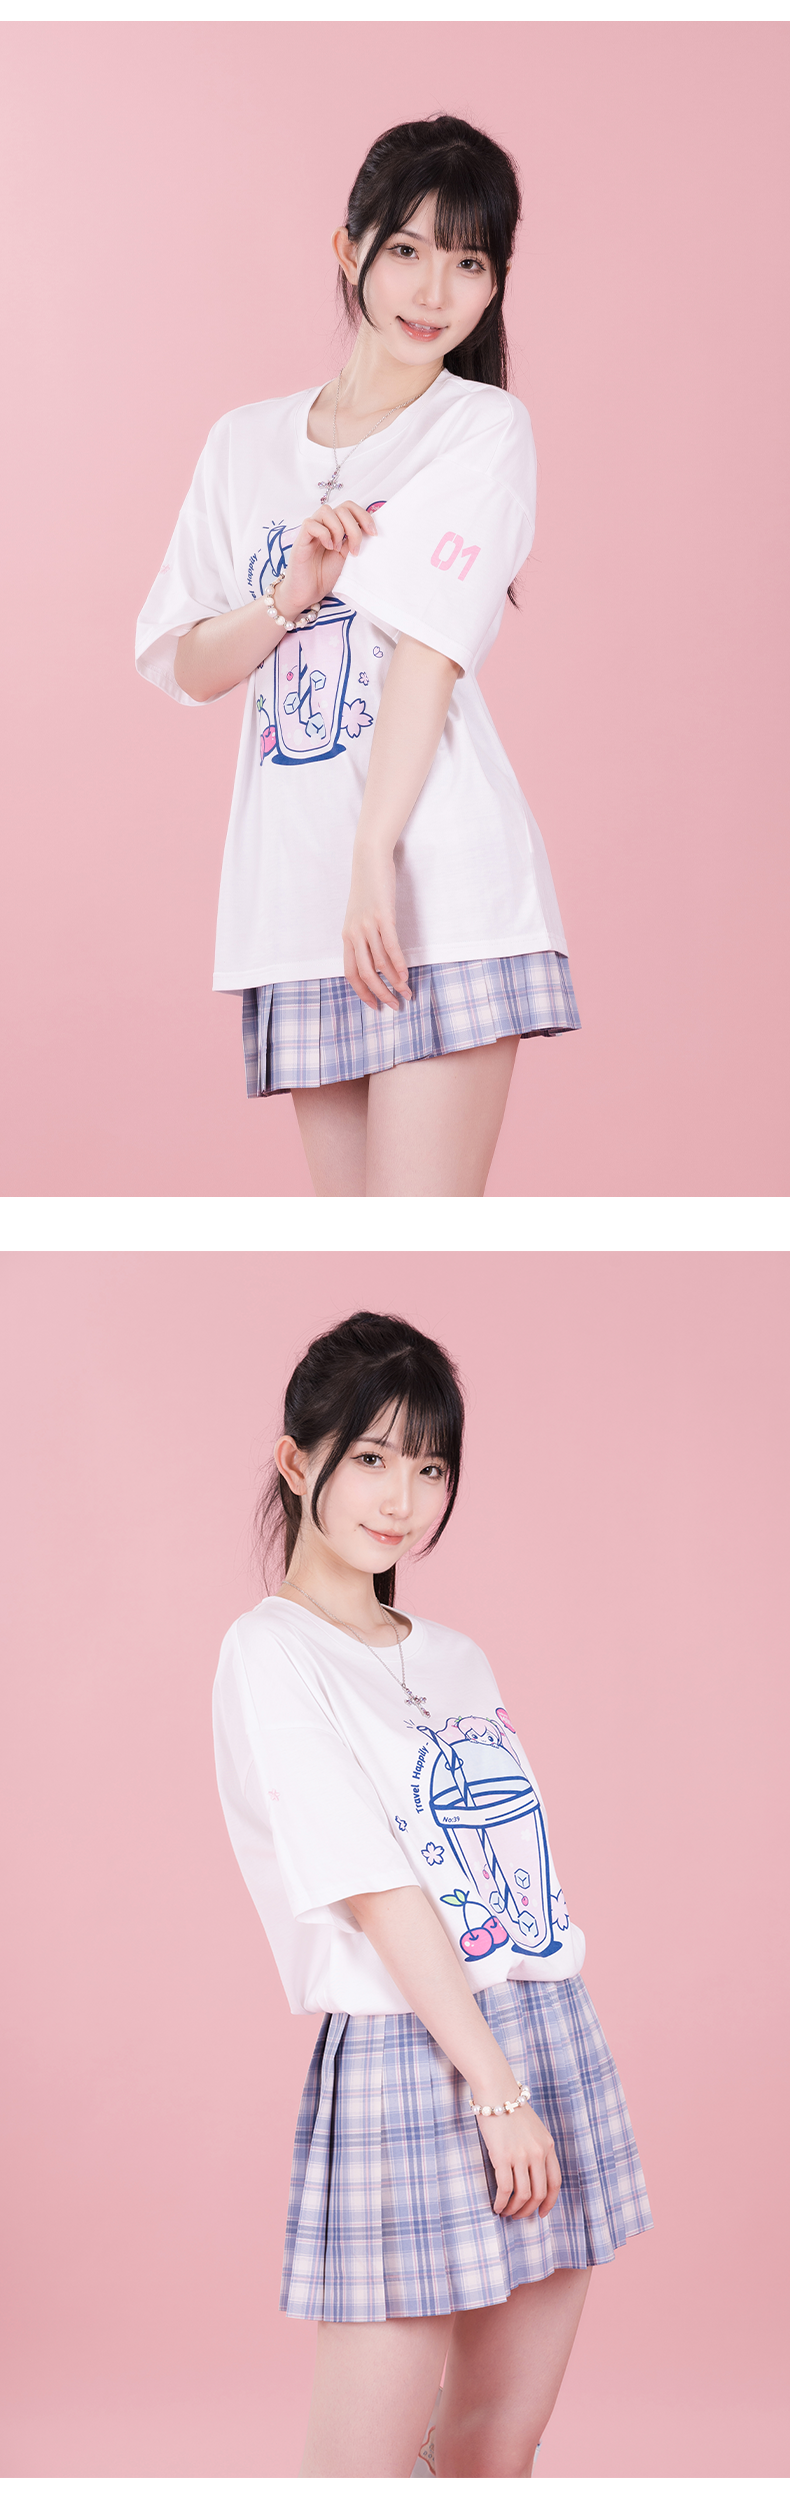 Hatsune Miku - Sakura Miku Series - White T-Shirt